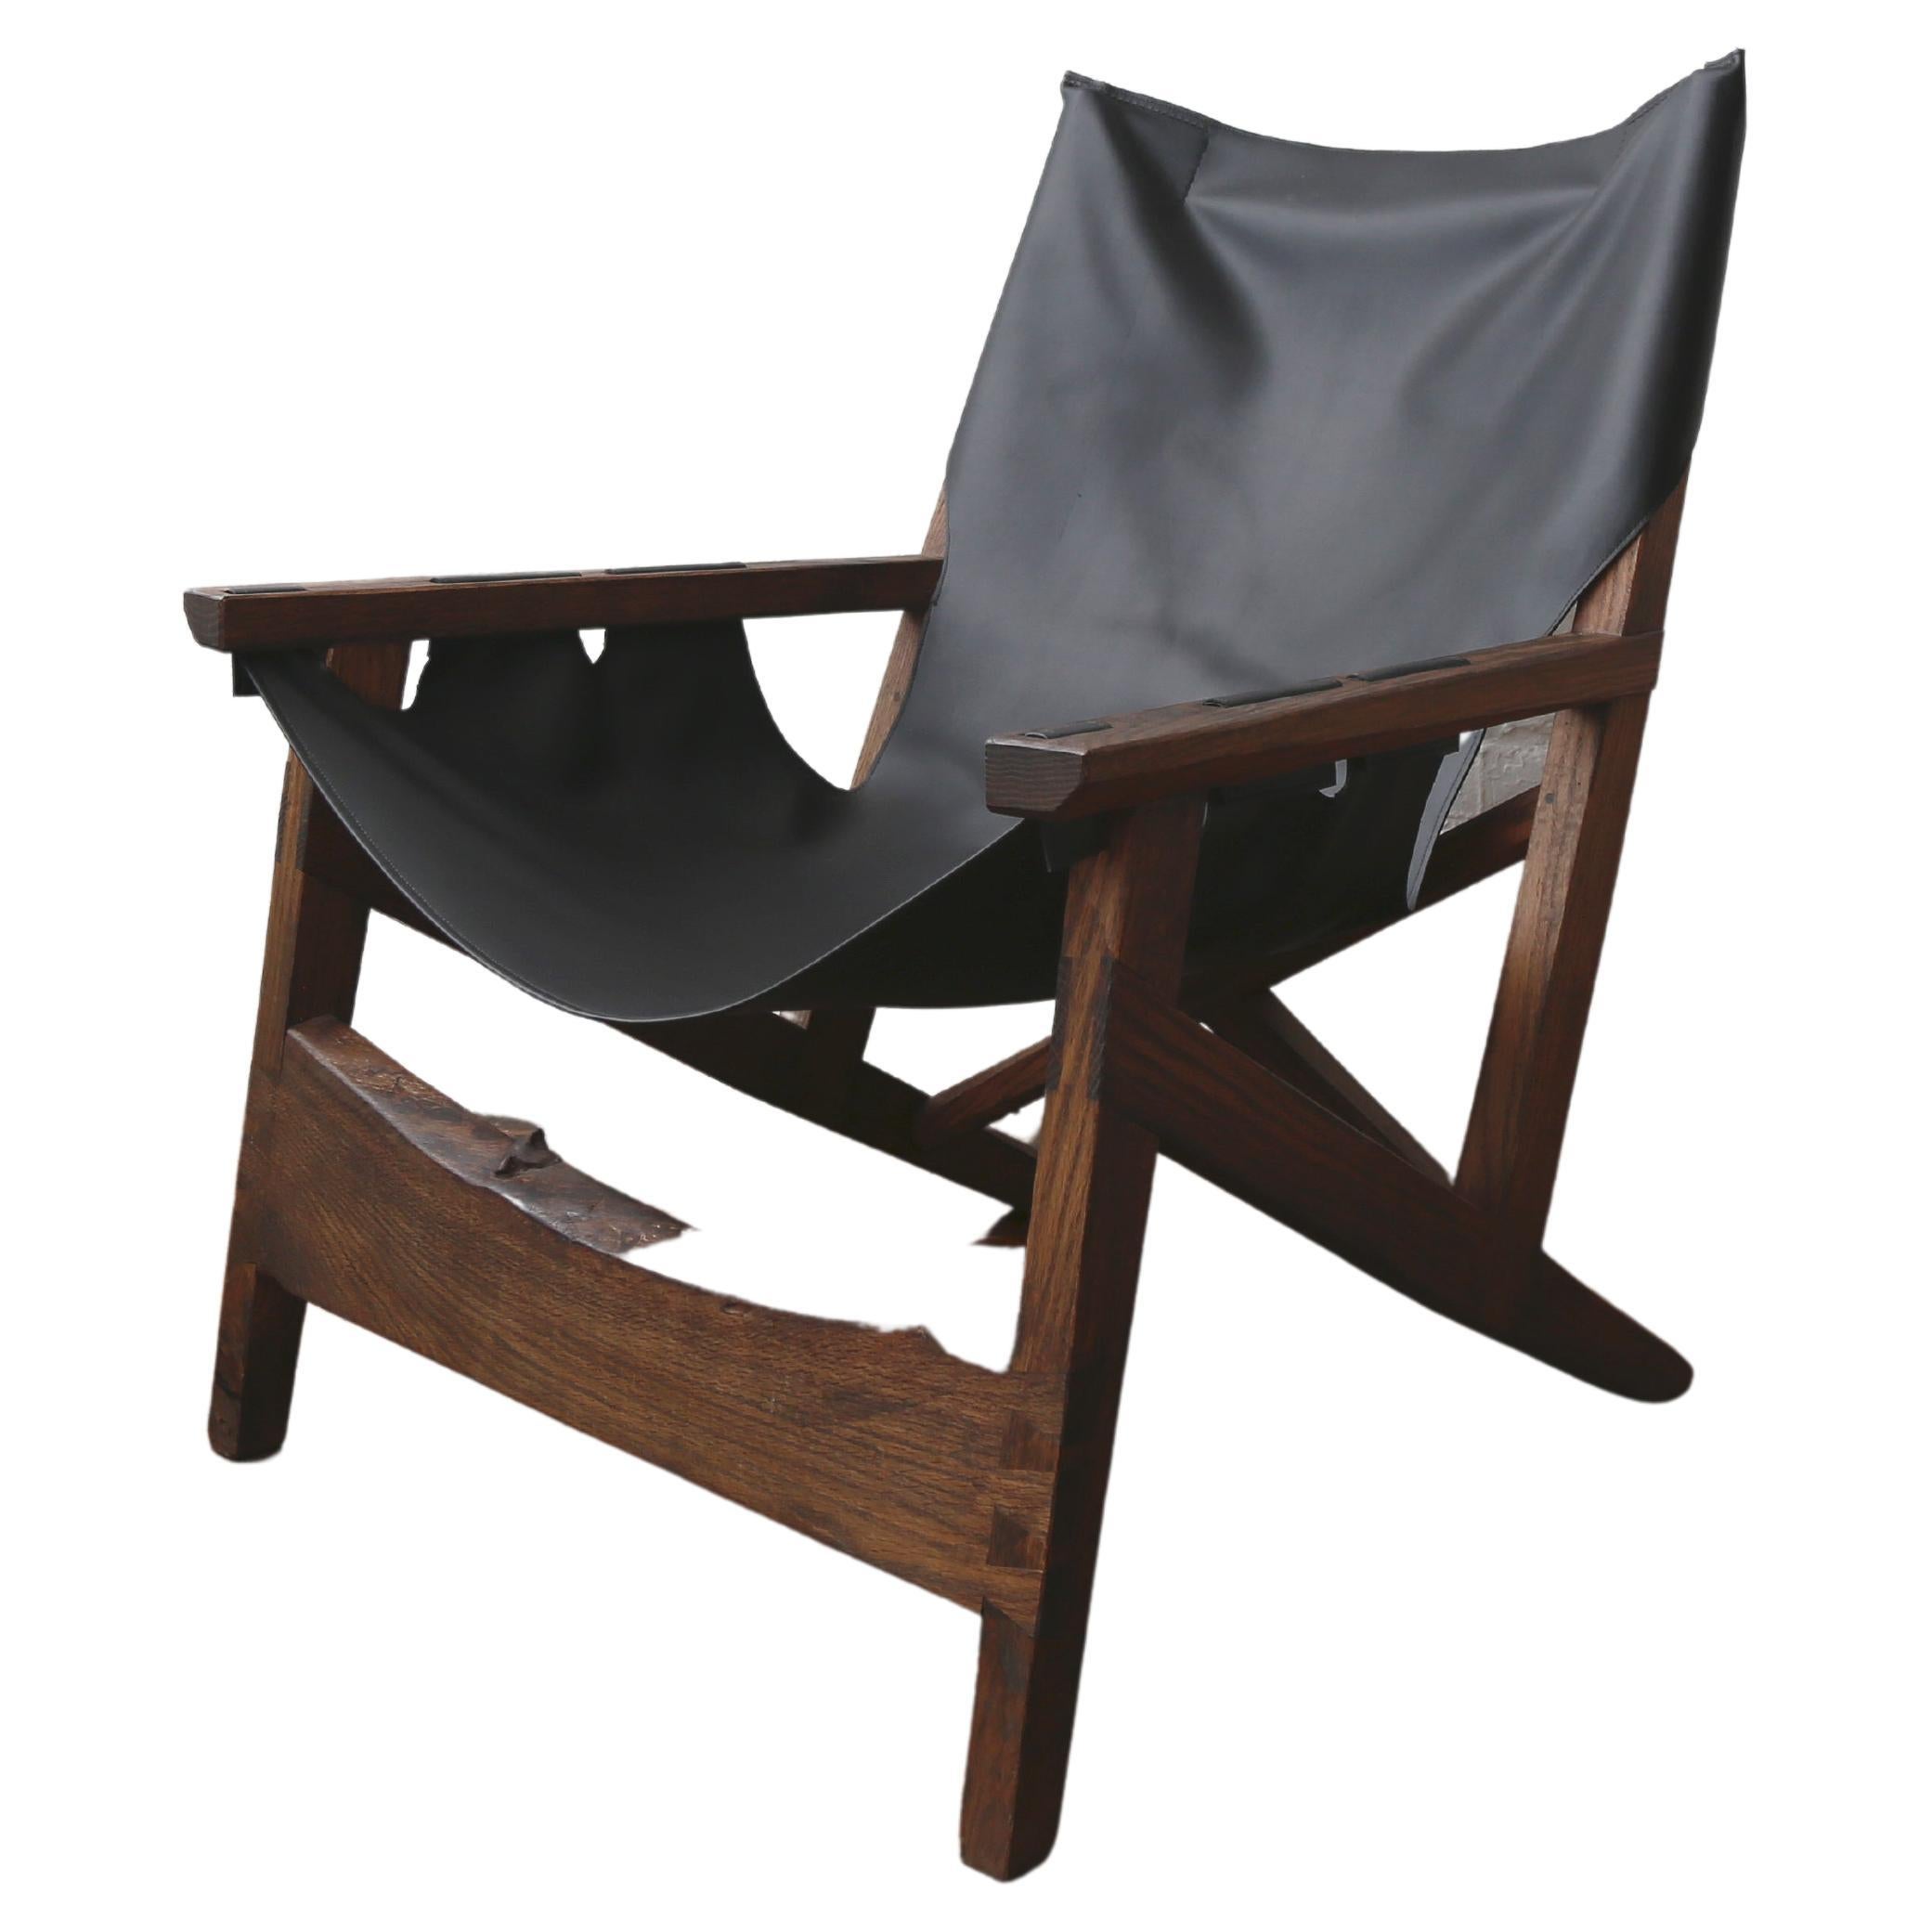 Fuugs Sling Chair aus geschwärzter Eiche mit Korbweide-Lederriemen